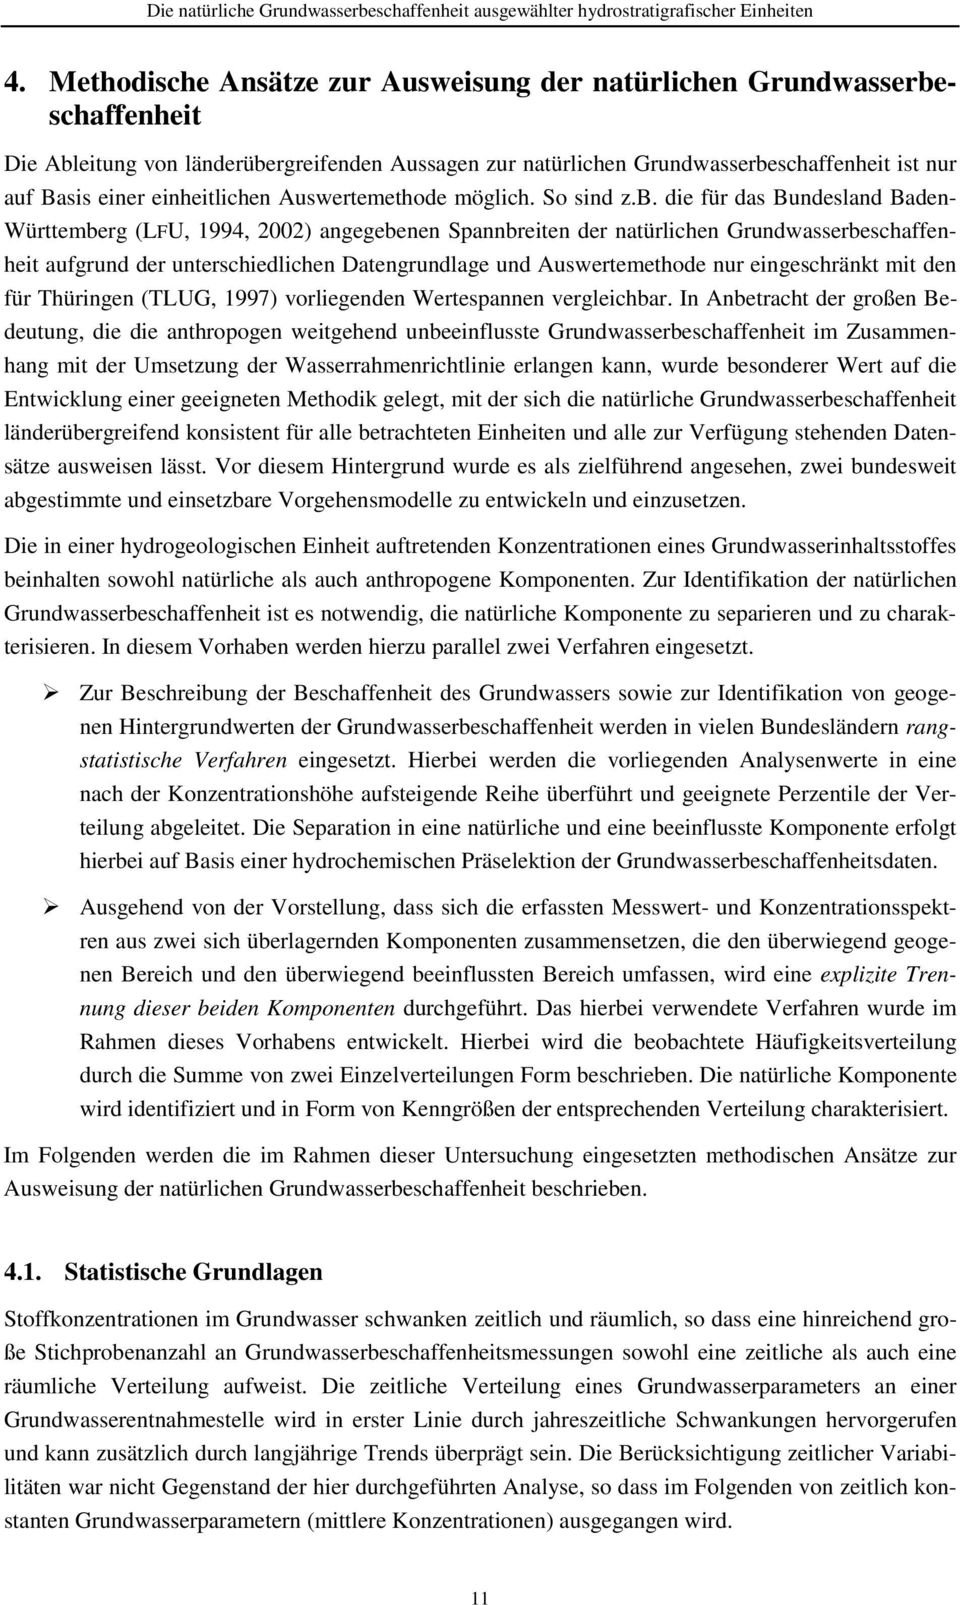 die für das Bundesland Baden- Württemberg (LFU, 1994, 2002) angegebenen Spannbreiten der natürlichen Grundwasserbeschaffenheit aufgrund der unterschiedlichen Datengrundlage und Auswertemethode nur